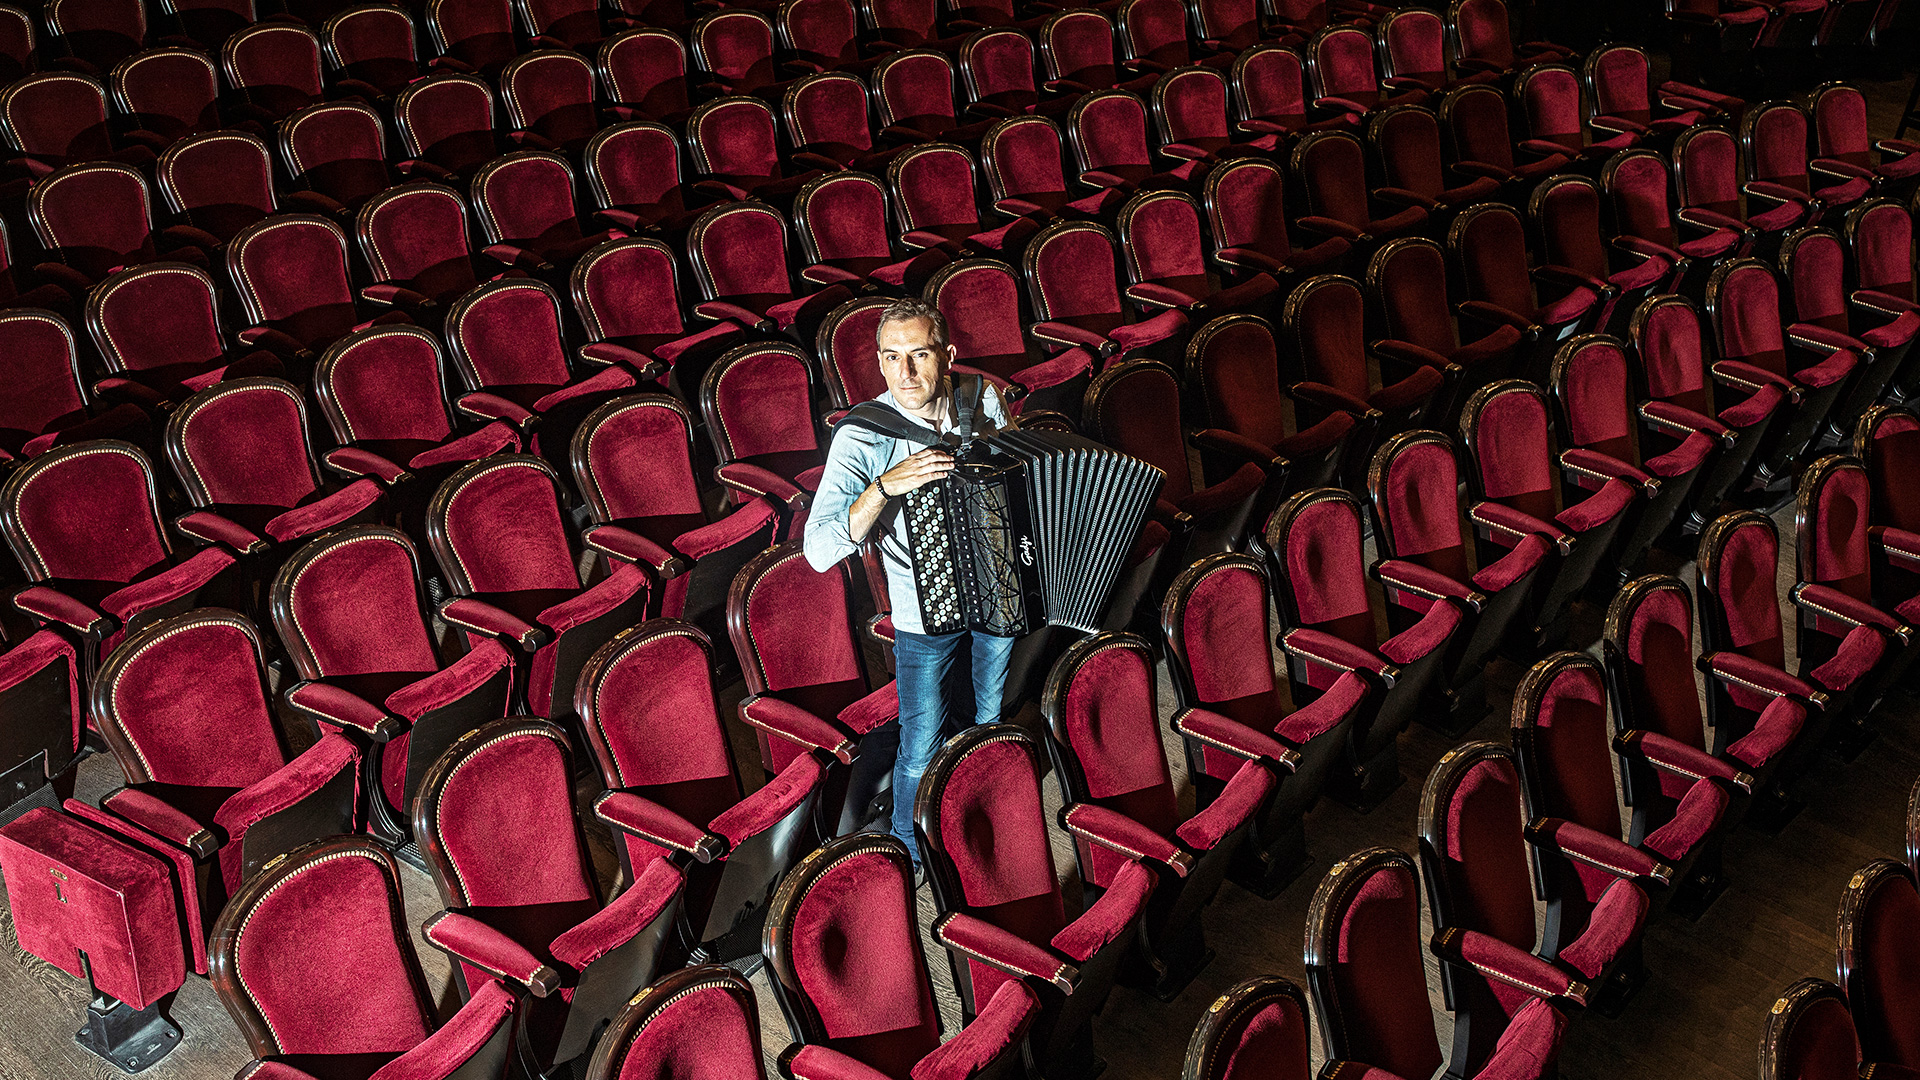 Félicien Brut et l’Orchestre Symphonique Région Centre-Val de Loire